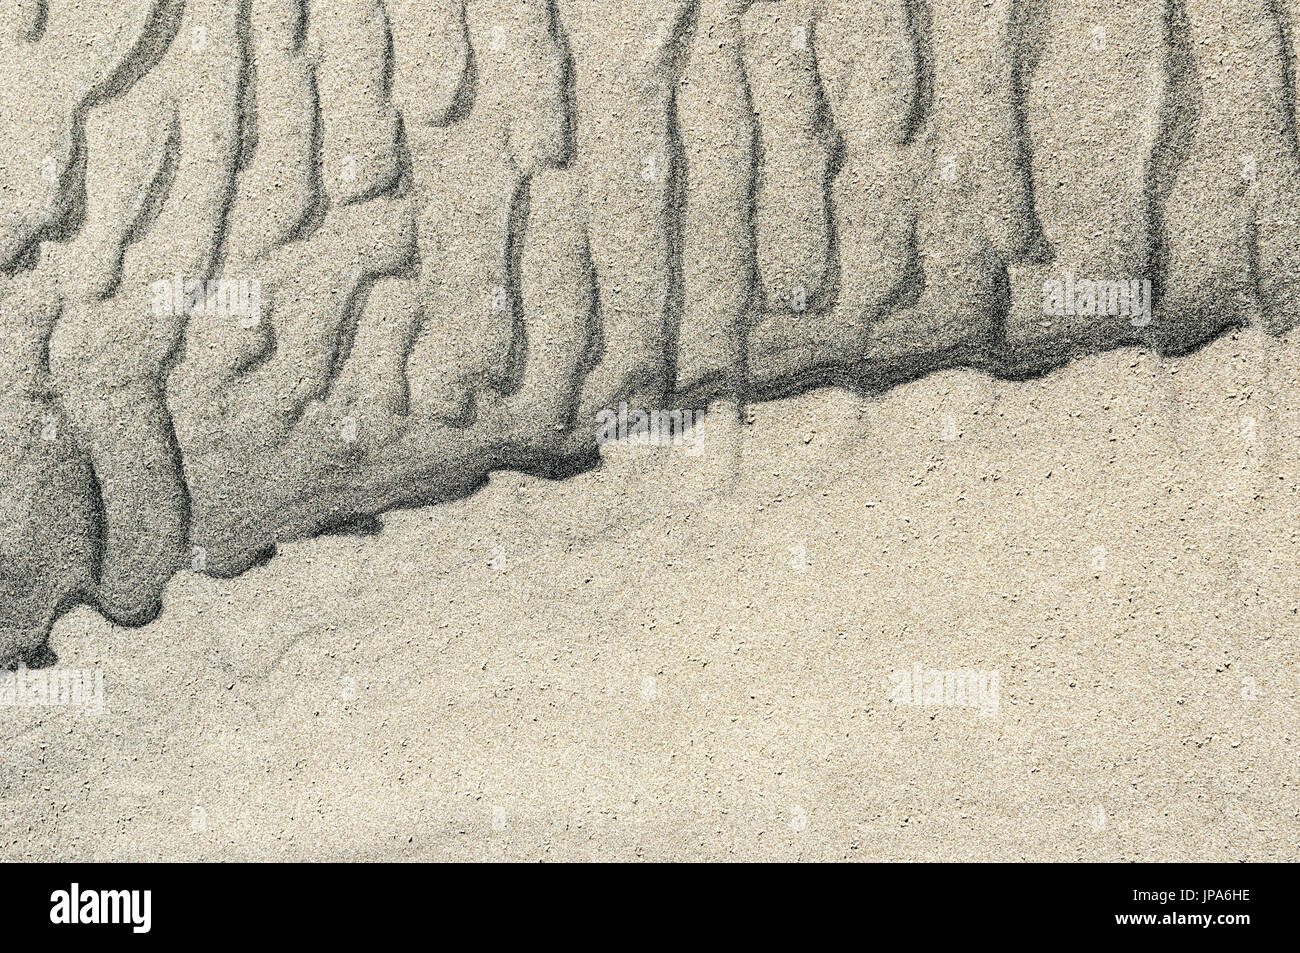 Scienze naturali, di sabbia sulla spiaggia, close-up Foto Stock